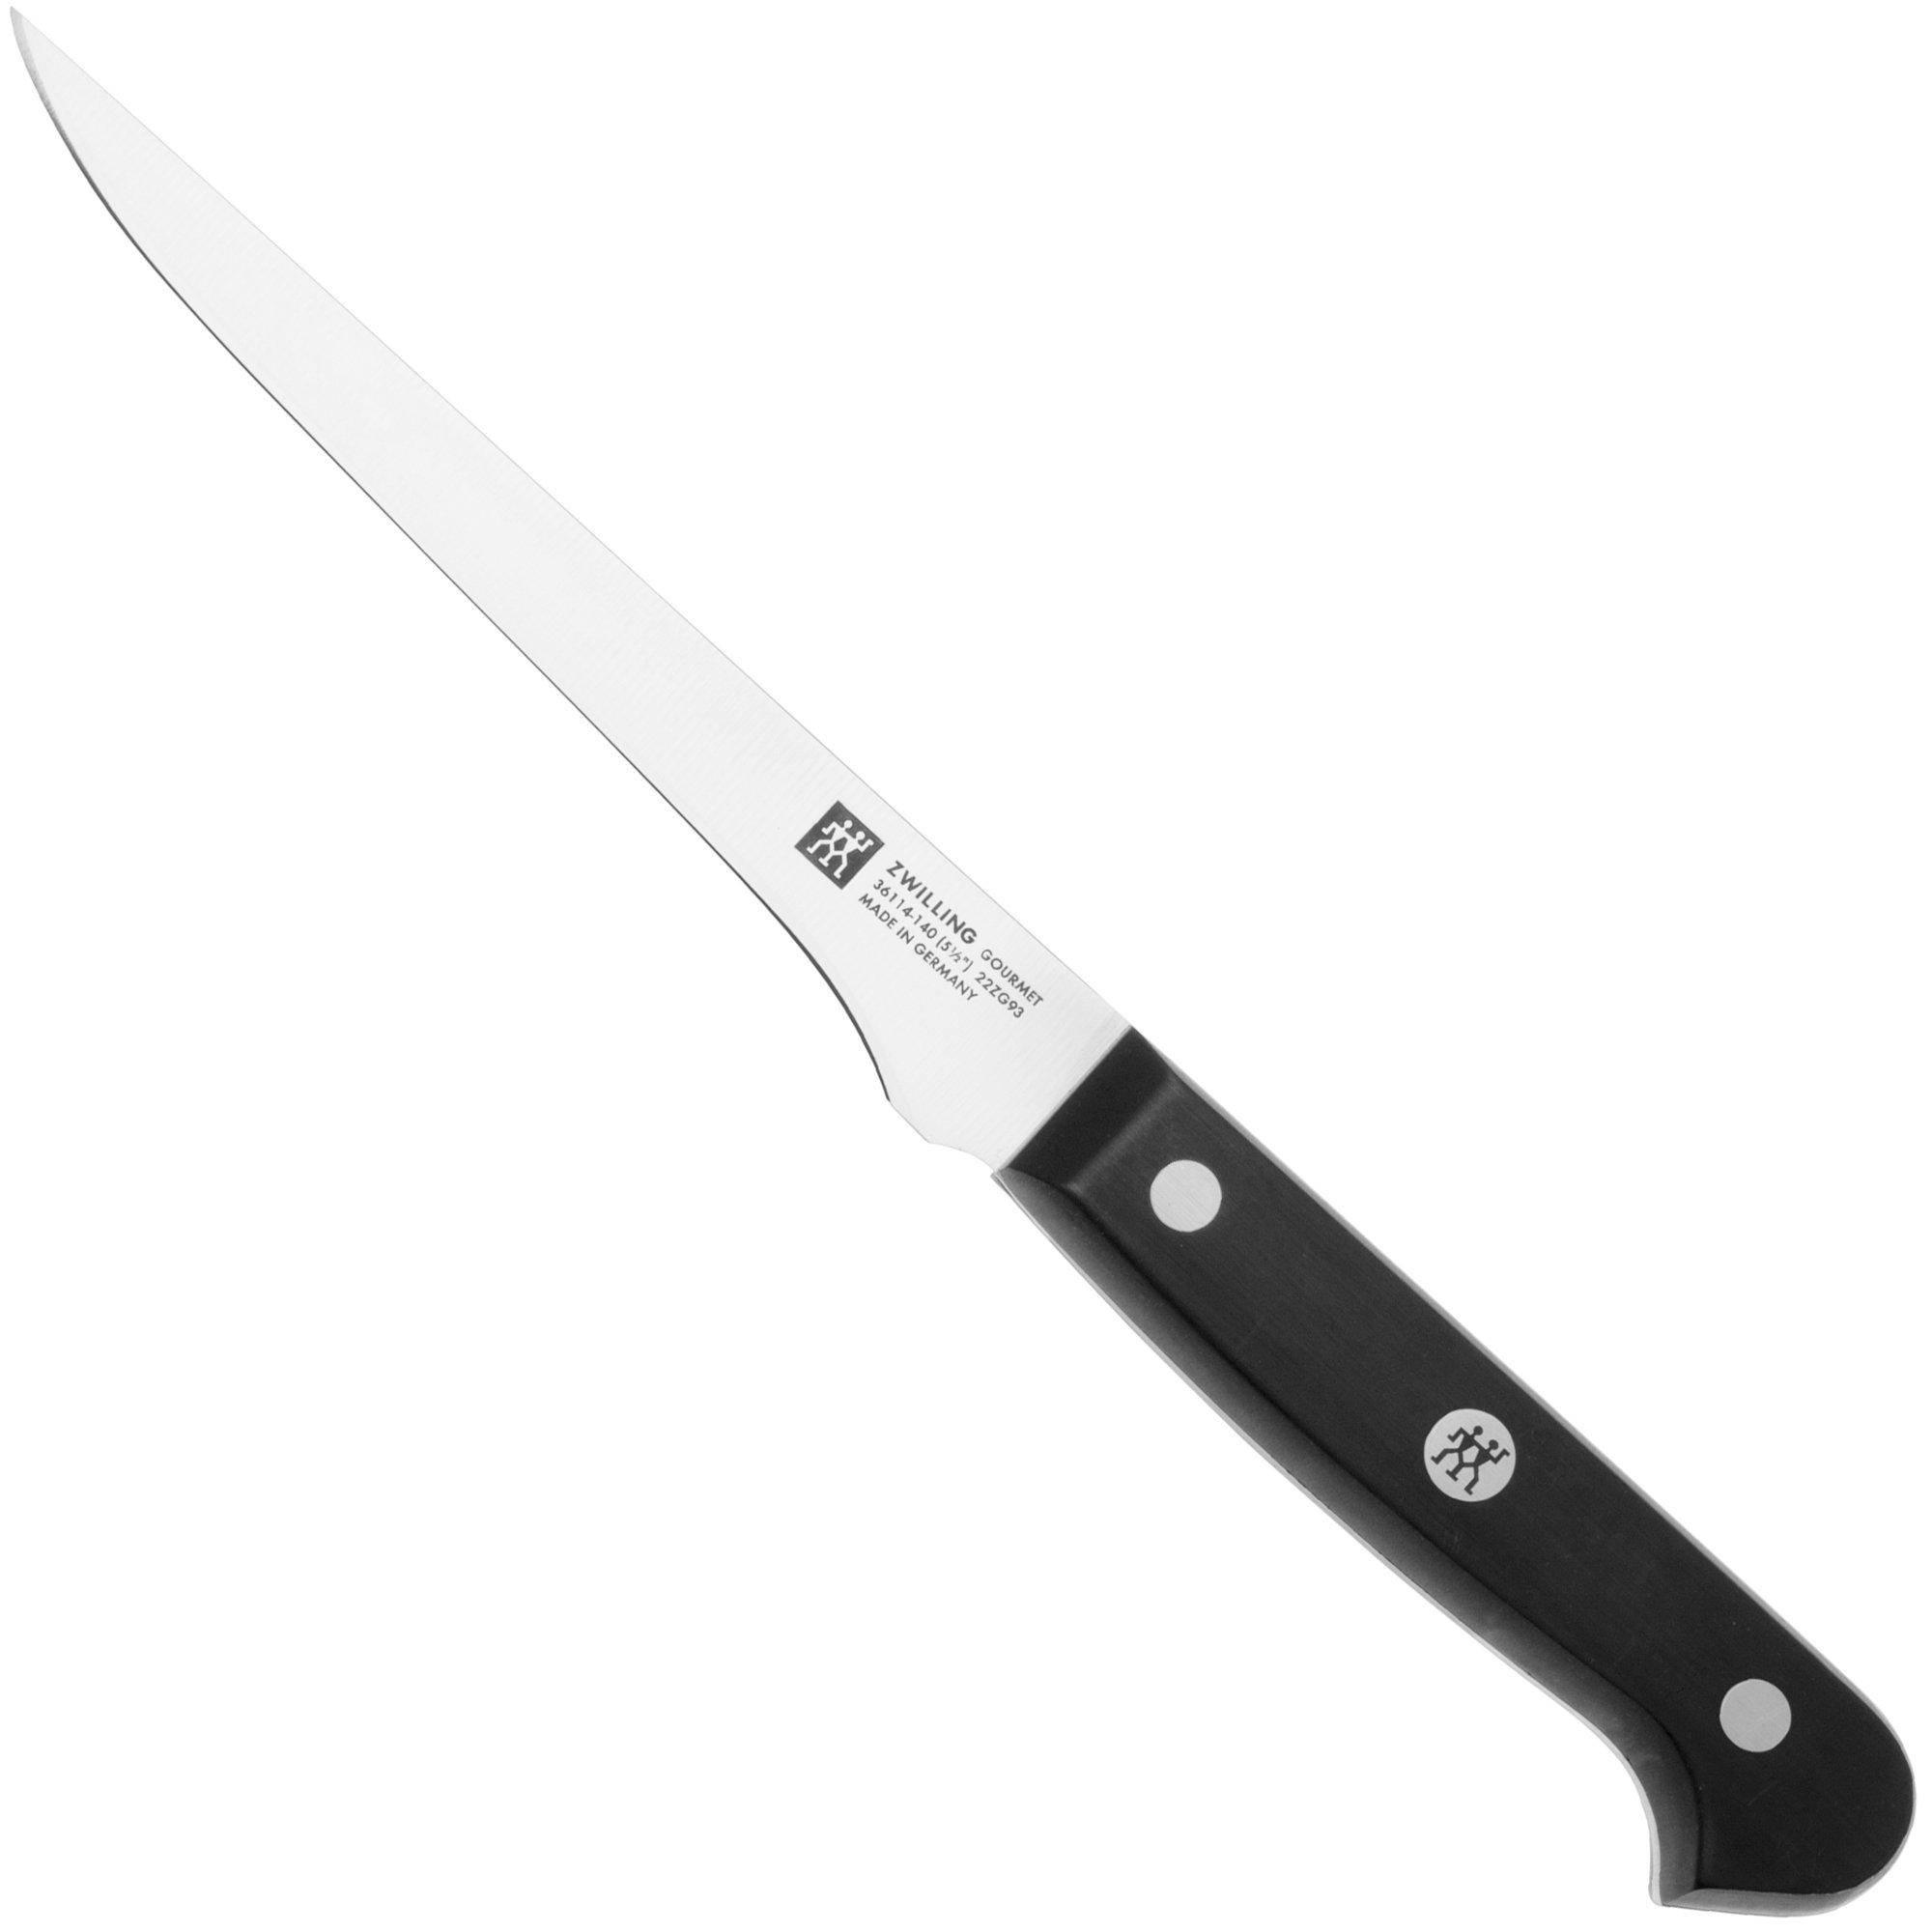 Zwilling Gourmet couteau à éplucher bec d'oiseau 6 cm, 36110-061